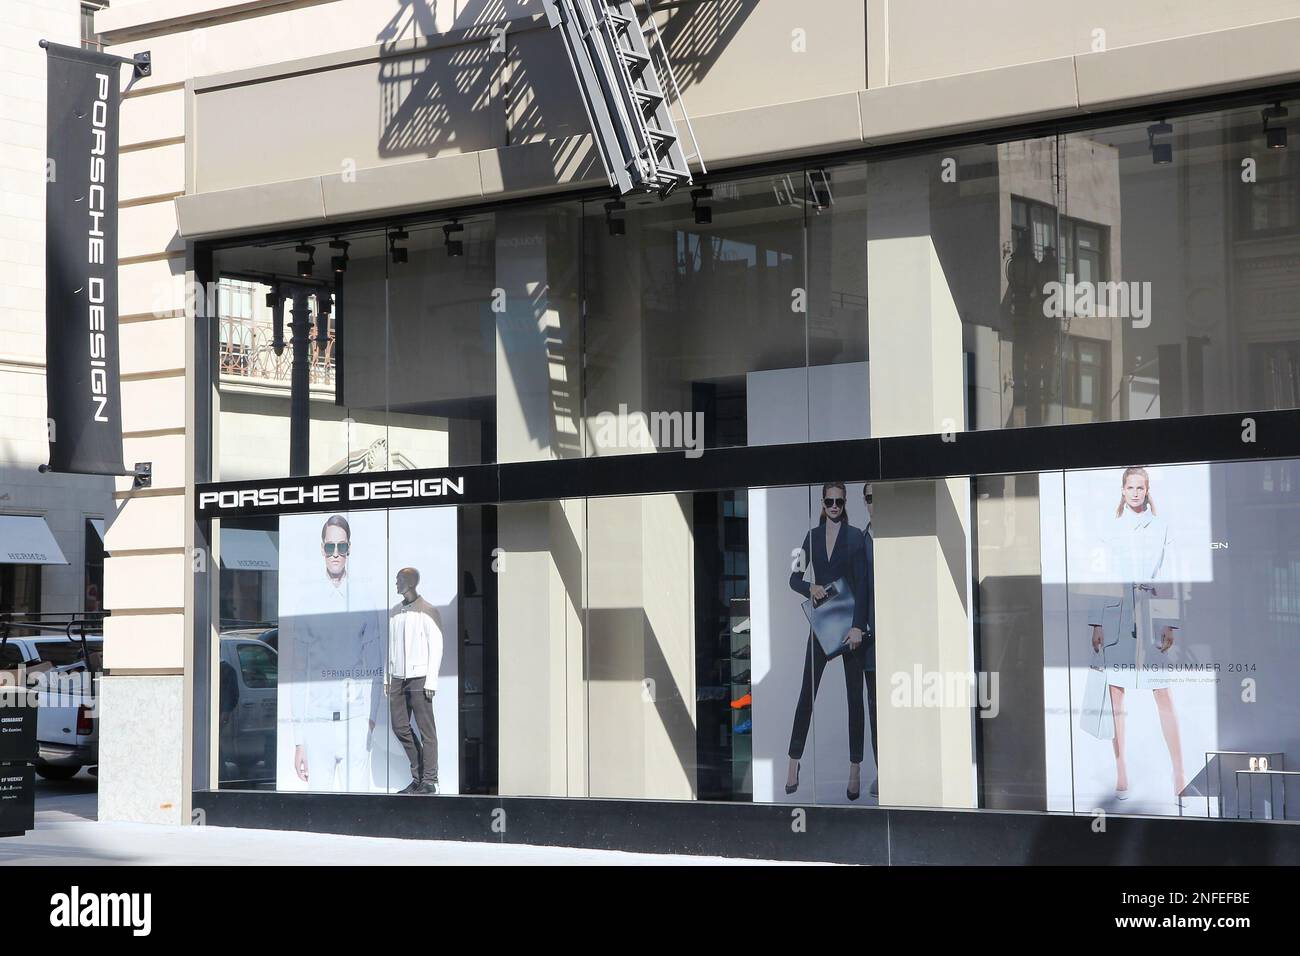 SAN FRANCISCO, USA - 8 APRILE 2014: Negozio di moda di lusso Porsche Design a San Francisco, USA. Il marchio della moda è di proprietà di Porsche AG. Foto Stock